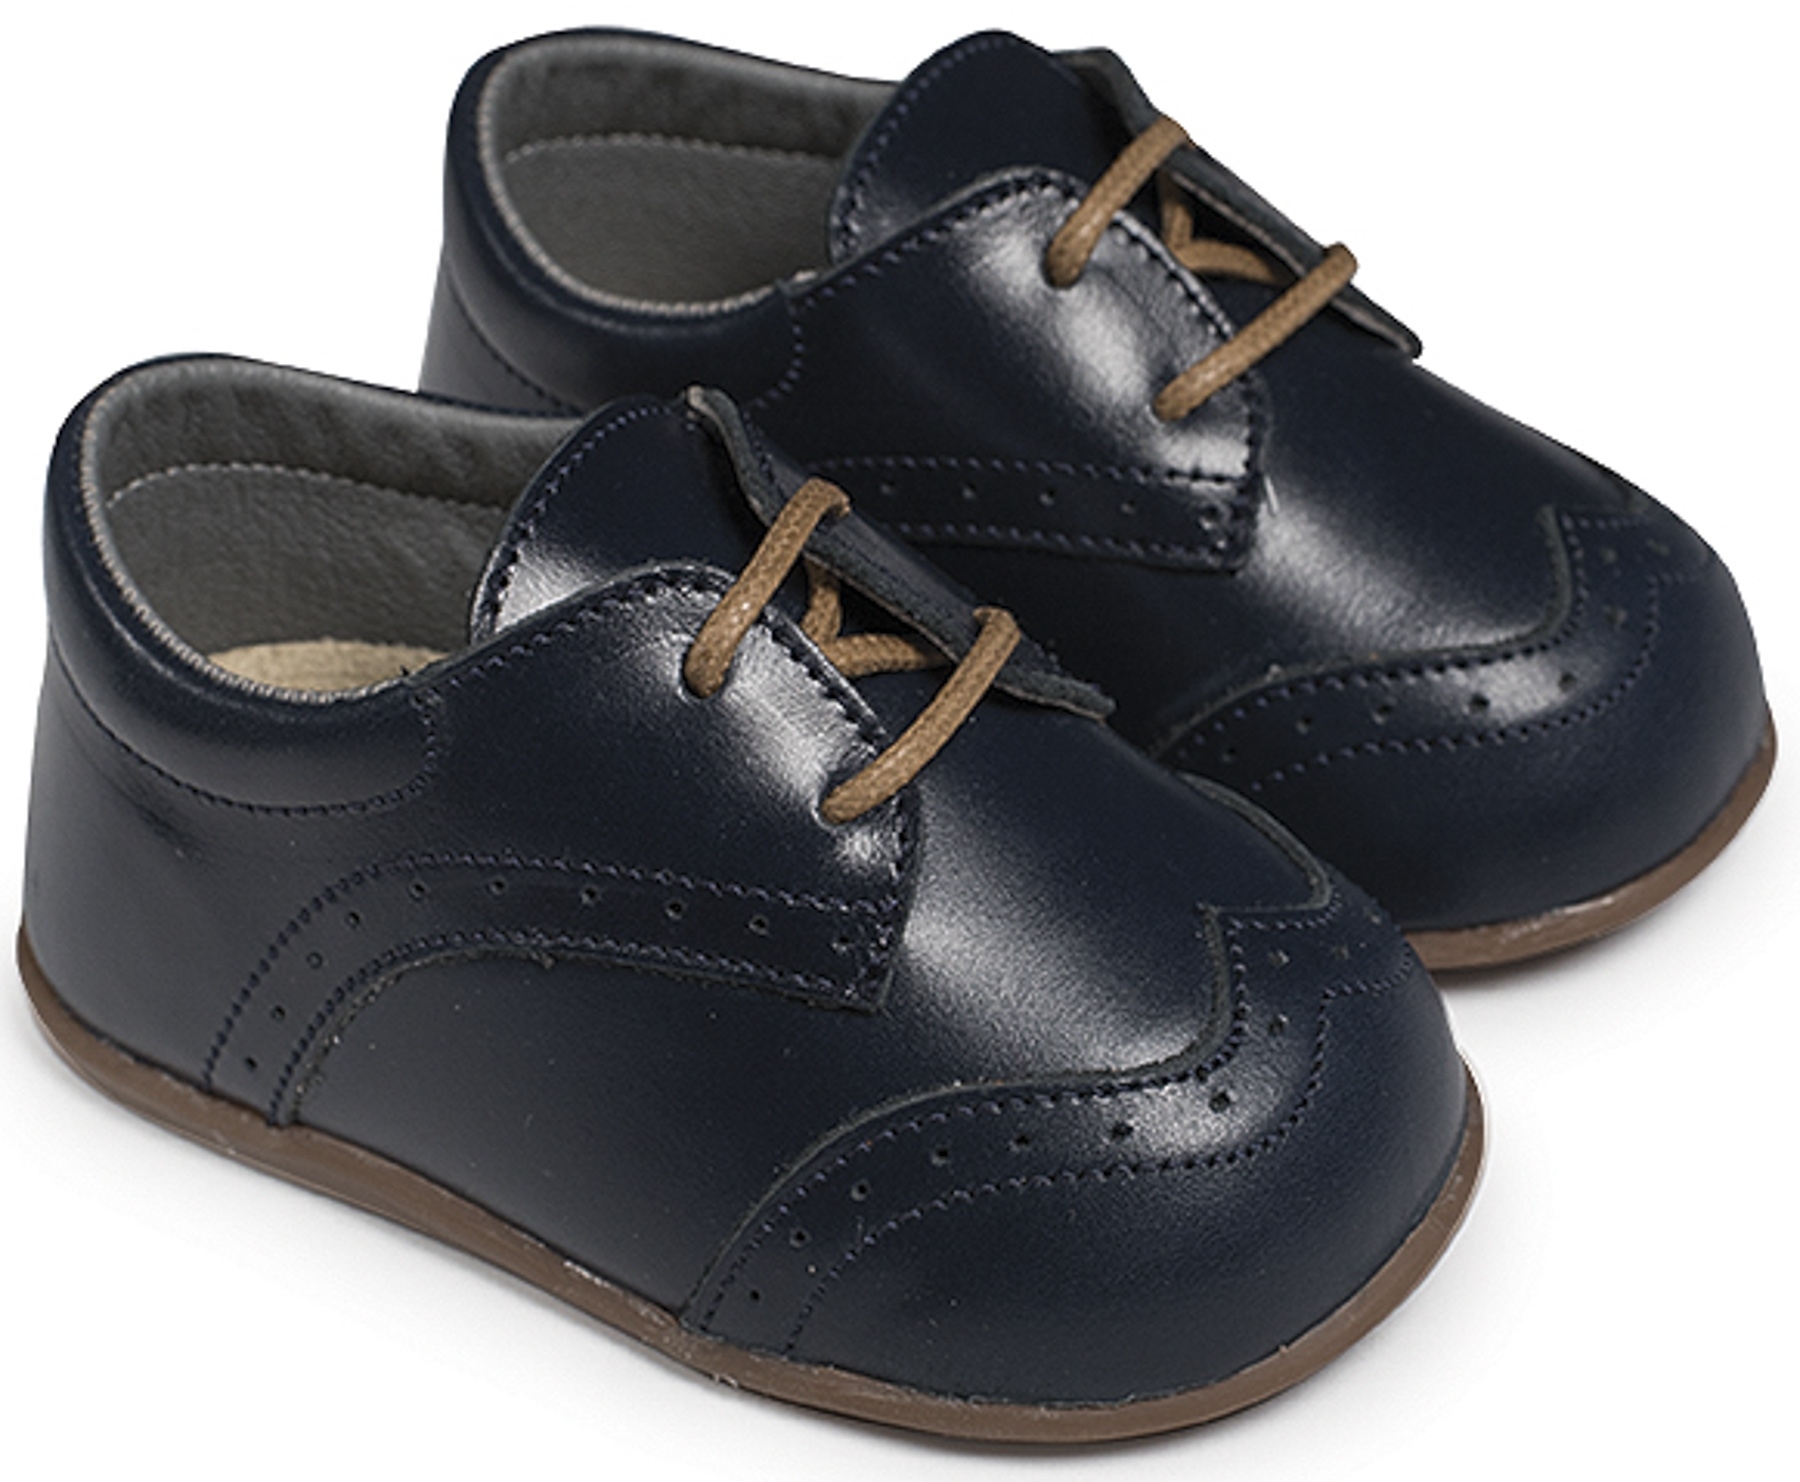 Babywalker πρώτα βήματα Δετό Brogues Μπλε - Βαπτιστικά παπούτσια για αγόρι